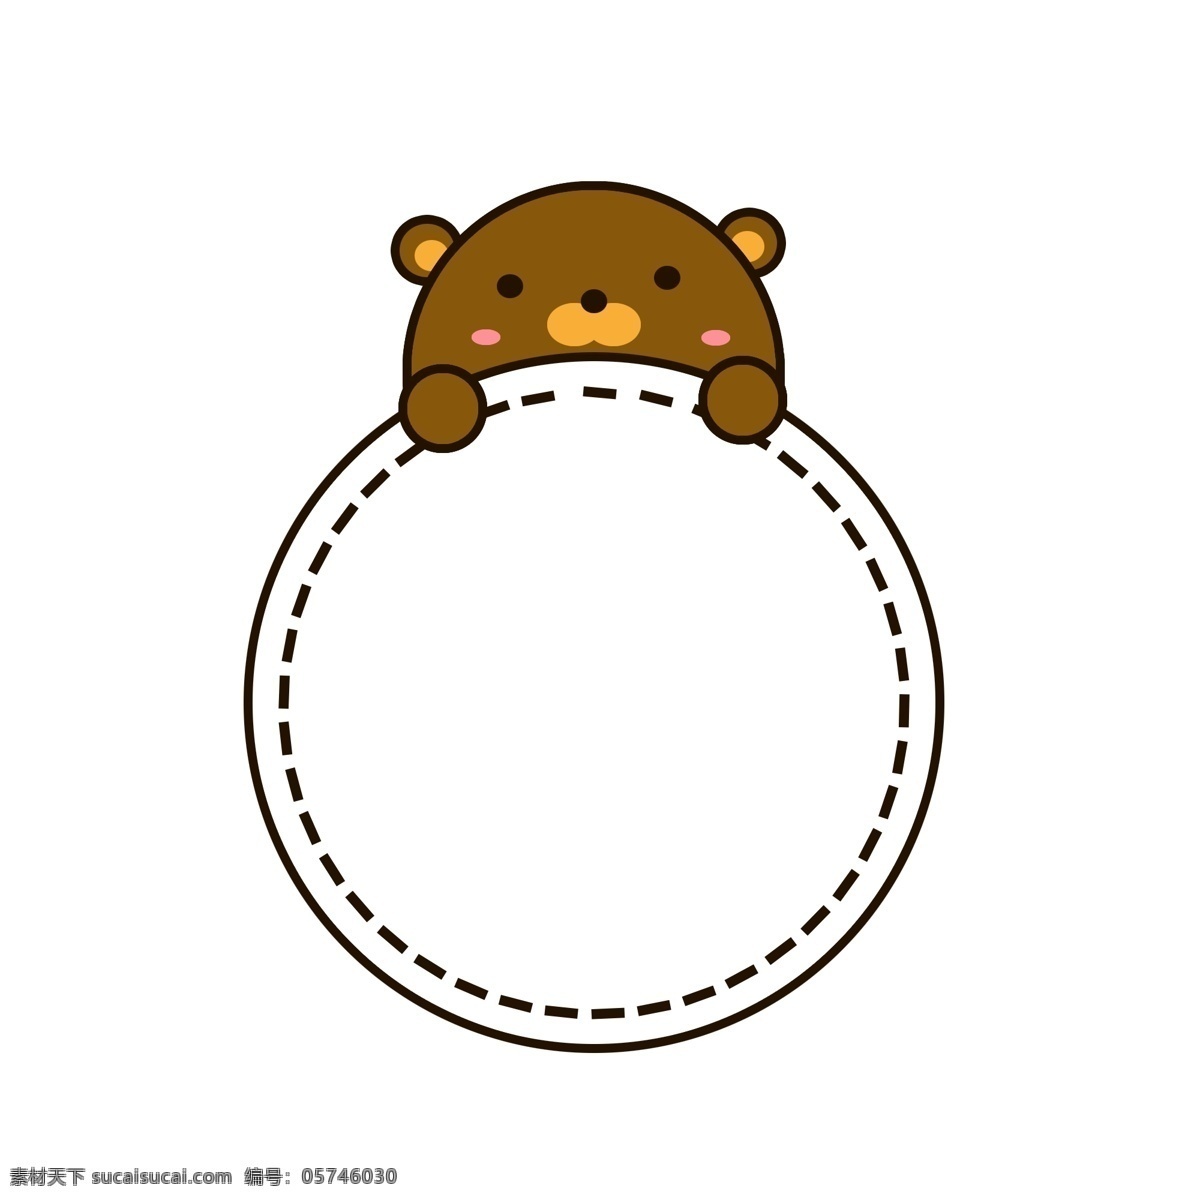 卡通 可爱 小 熊 动物 边框 棕色 小熊 虚线 圆形 元素